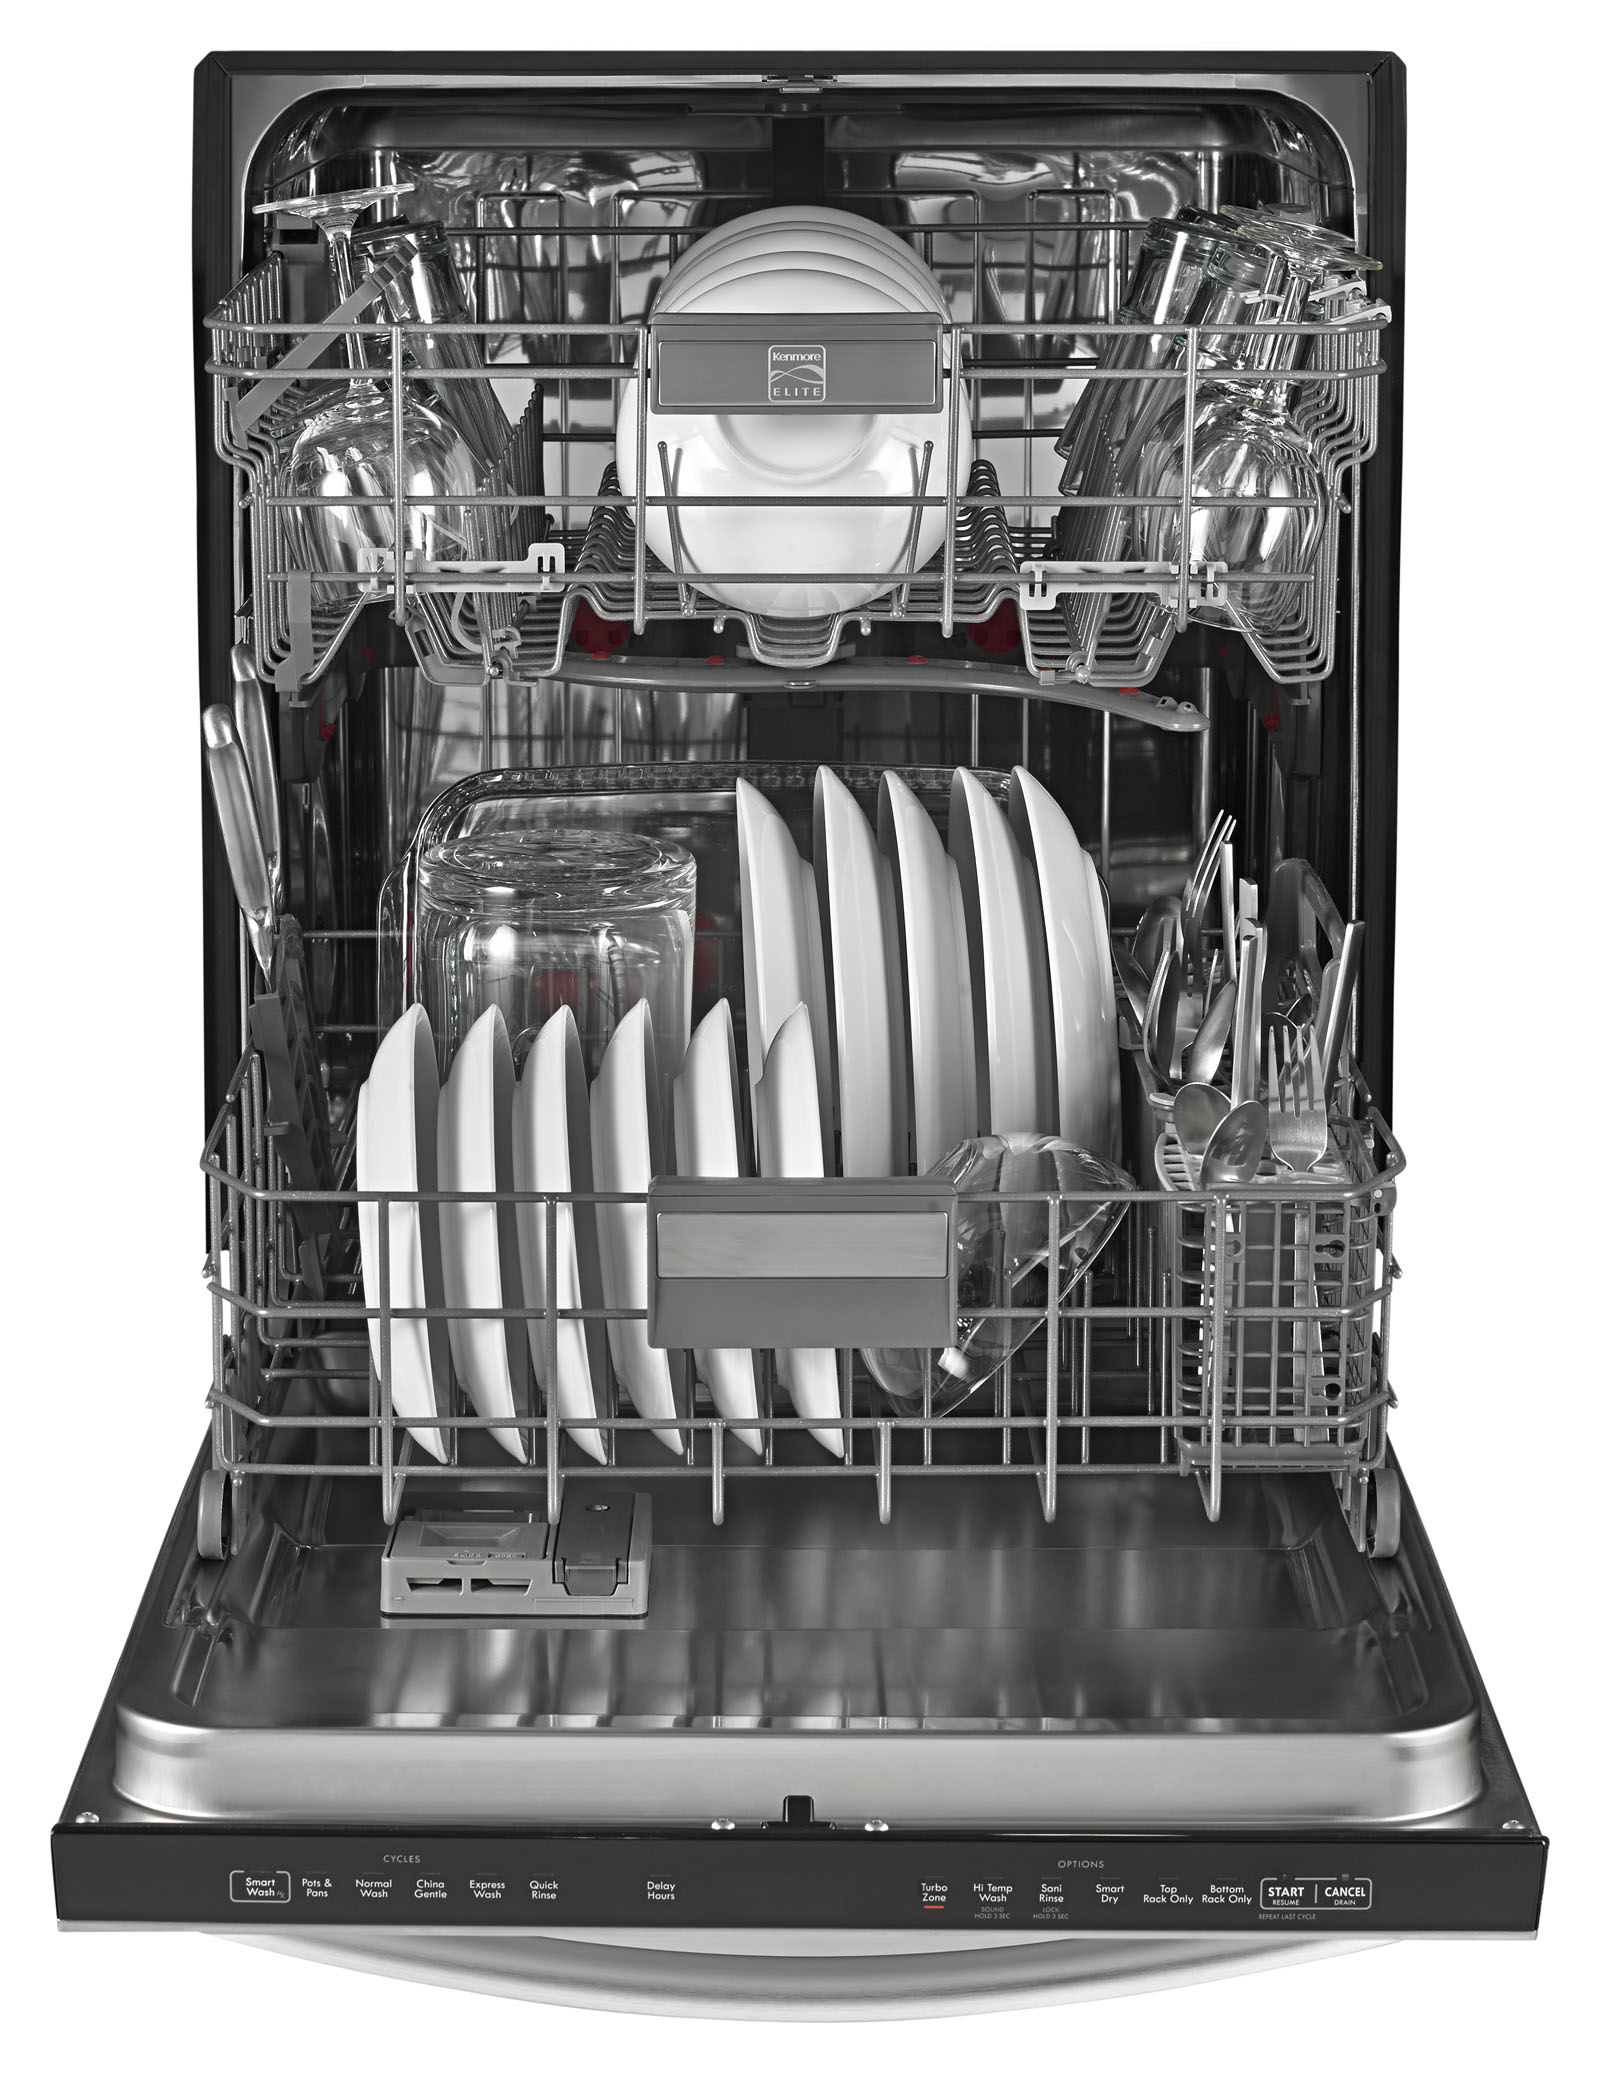 sears kenmore elite dishwasher